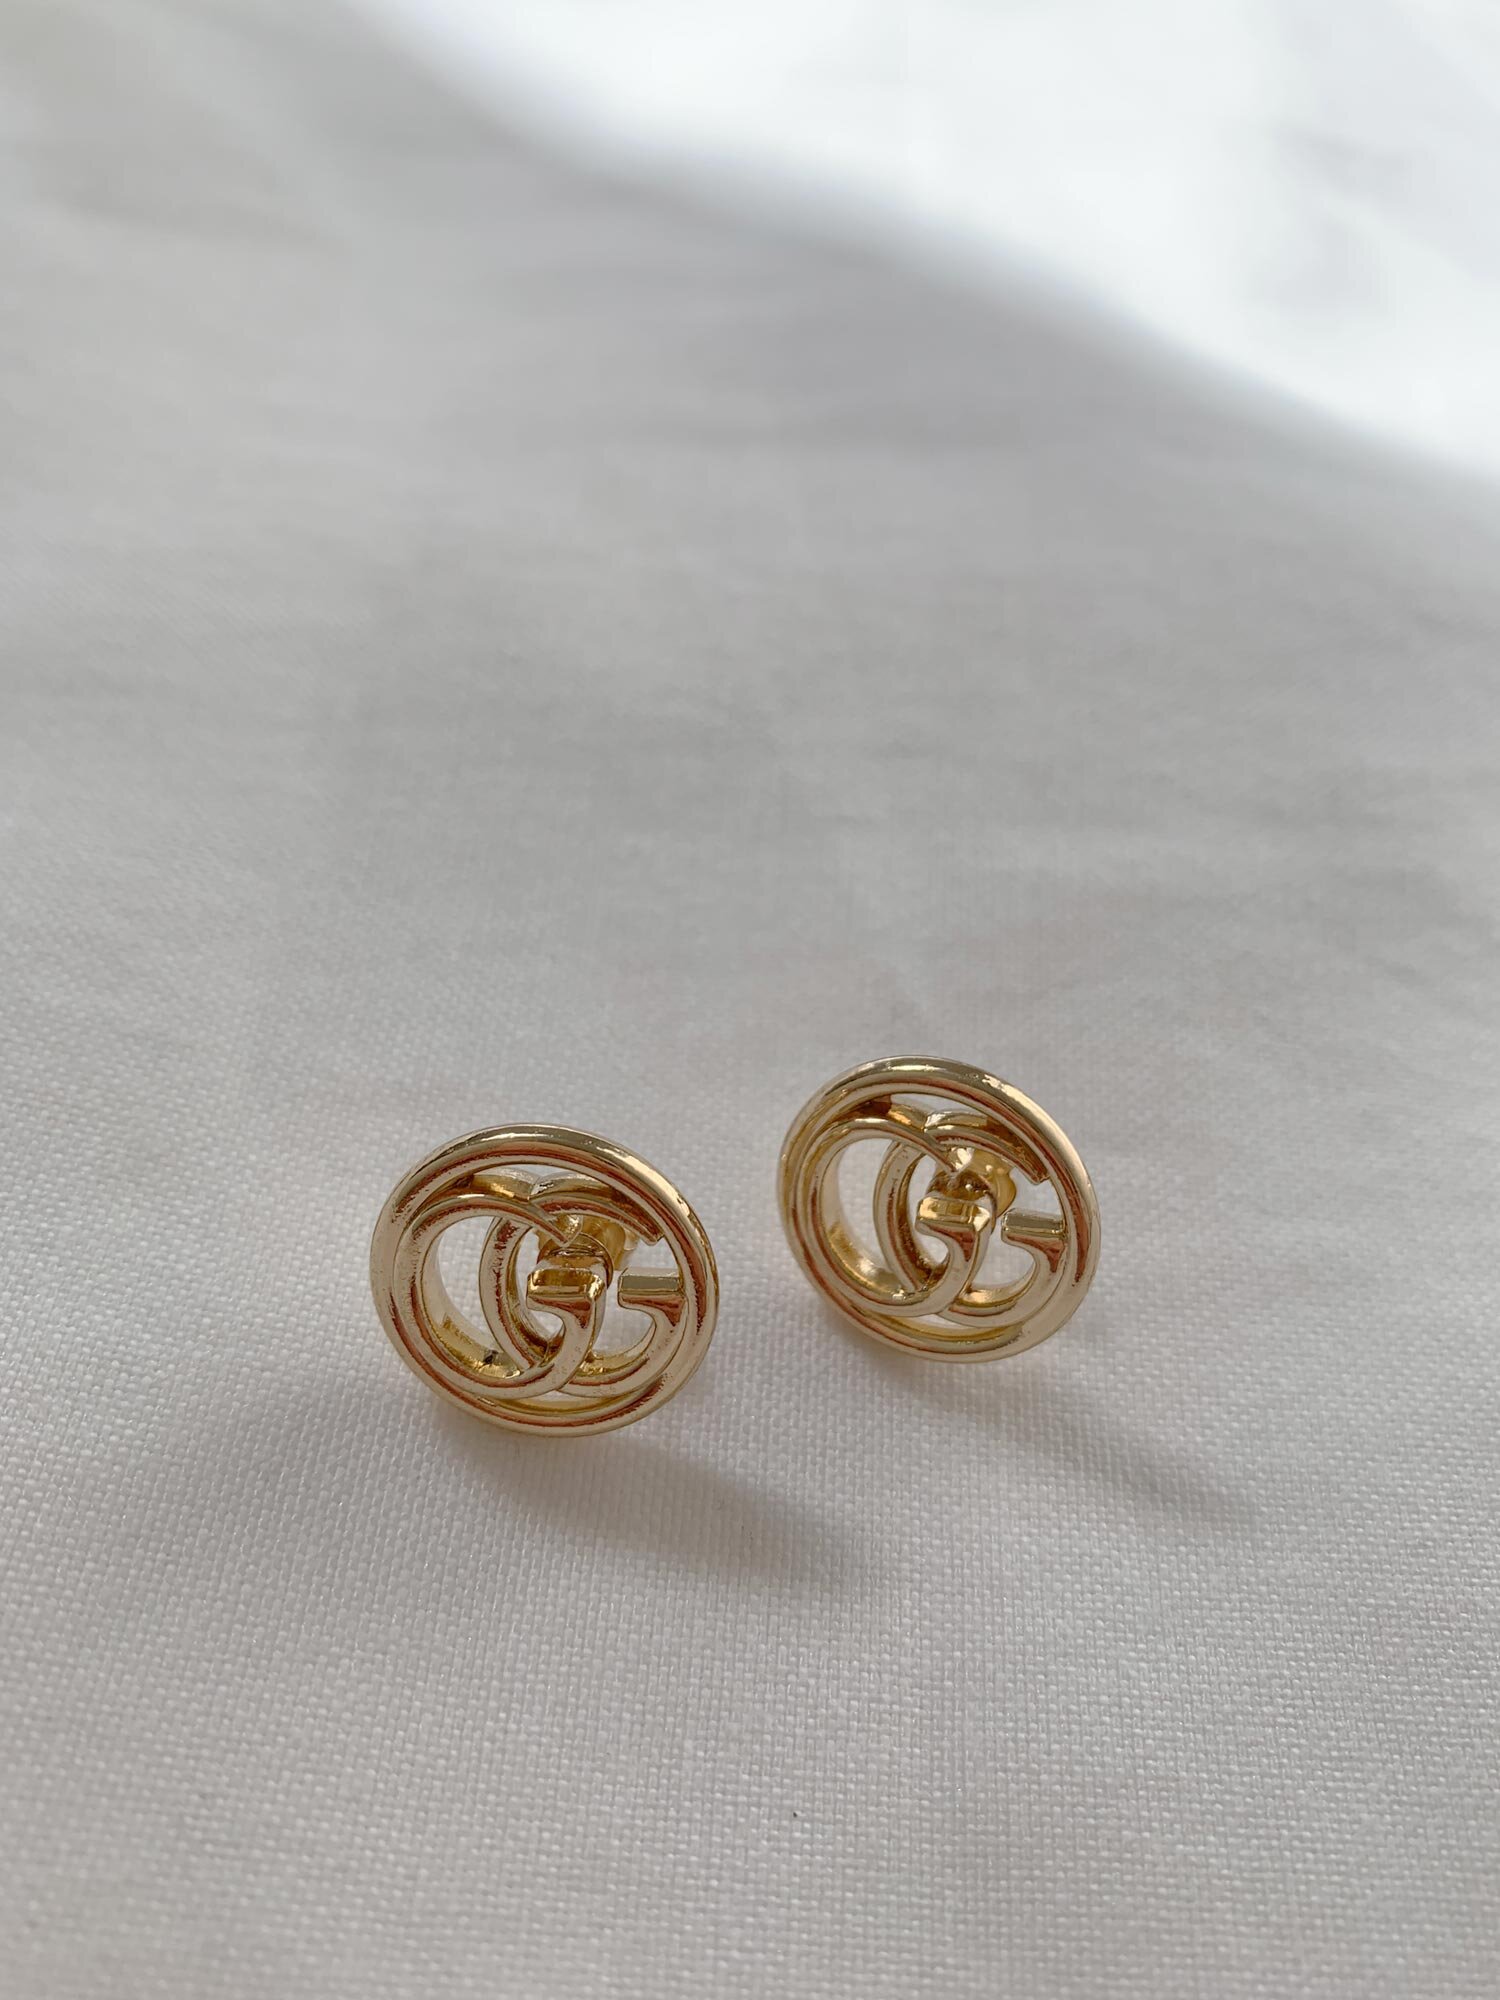 vintage gucci earrings